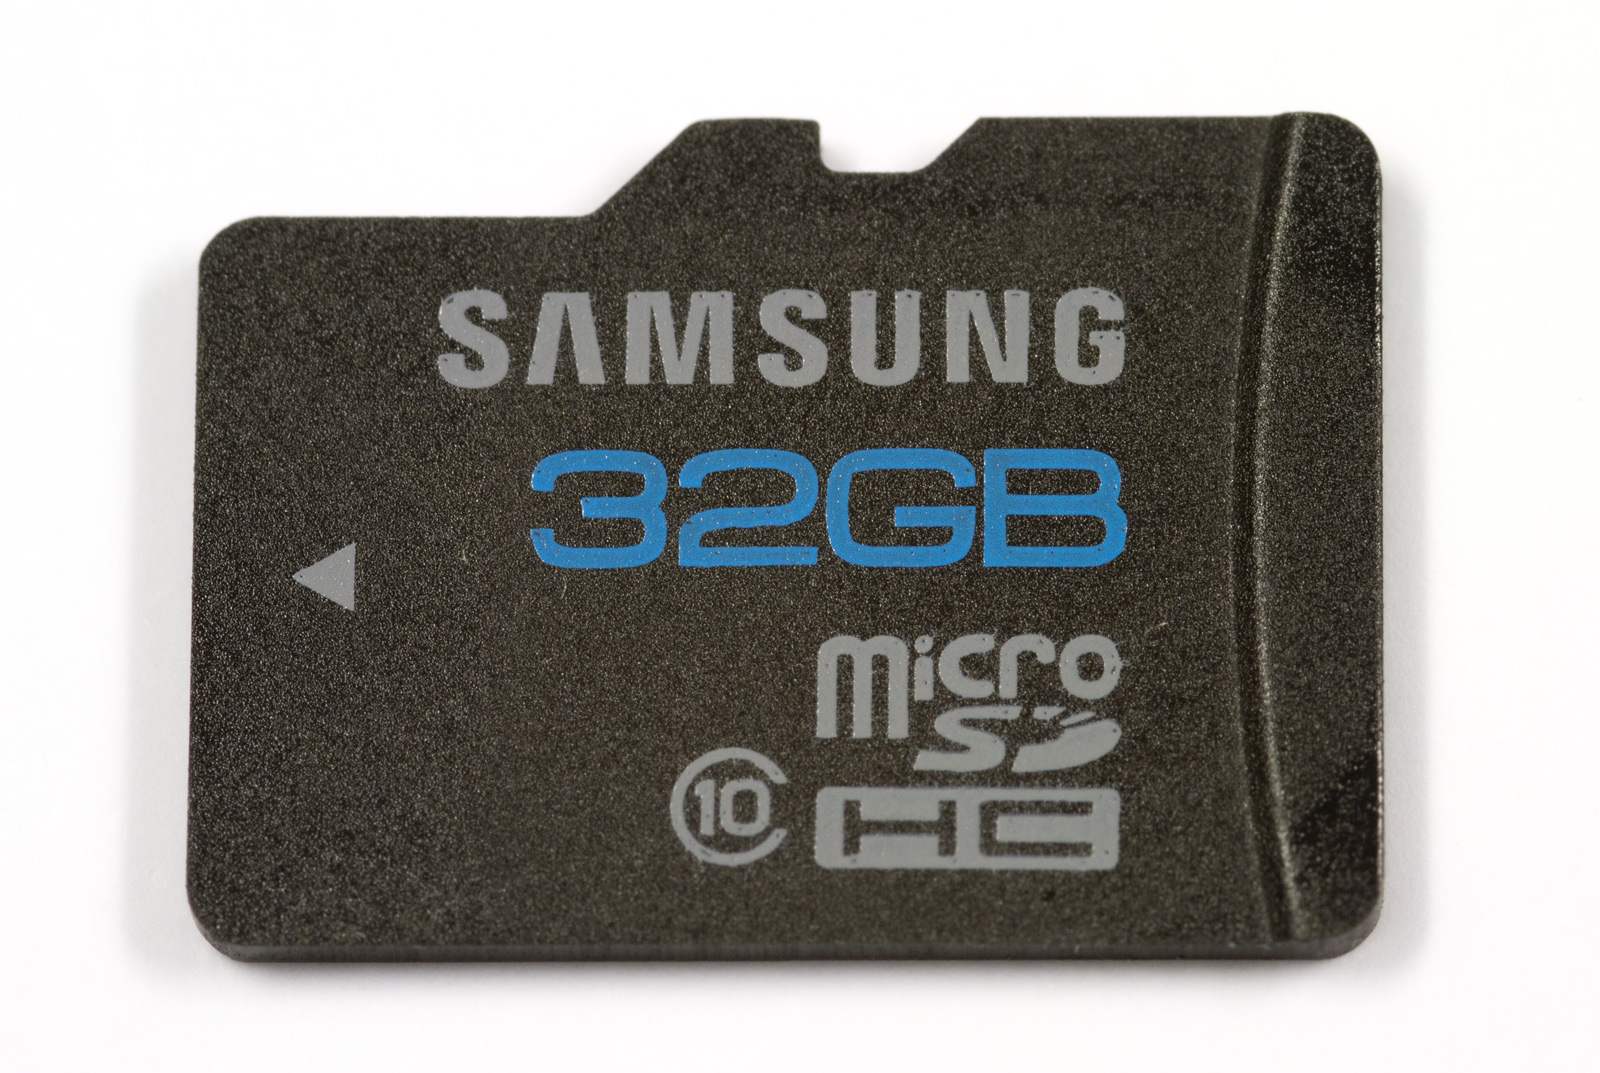 Для видеорегистратора карта памяти какого класса. MICROSD Samsung 32gb. Samsung MICROSDHC 32 ГБ. Микро SD 10 class 32 ГБ для видеорегистратора. Samsung MICROSD 10 class.